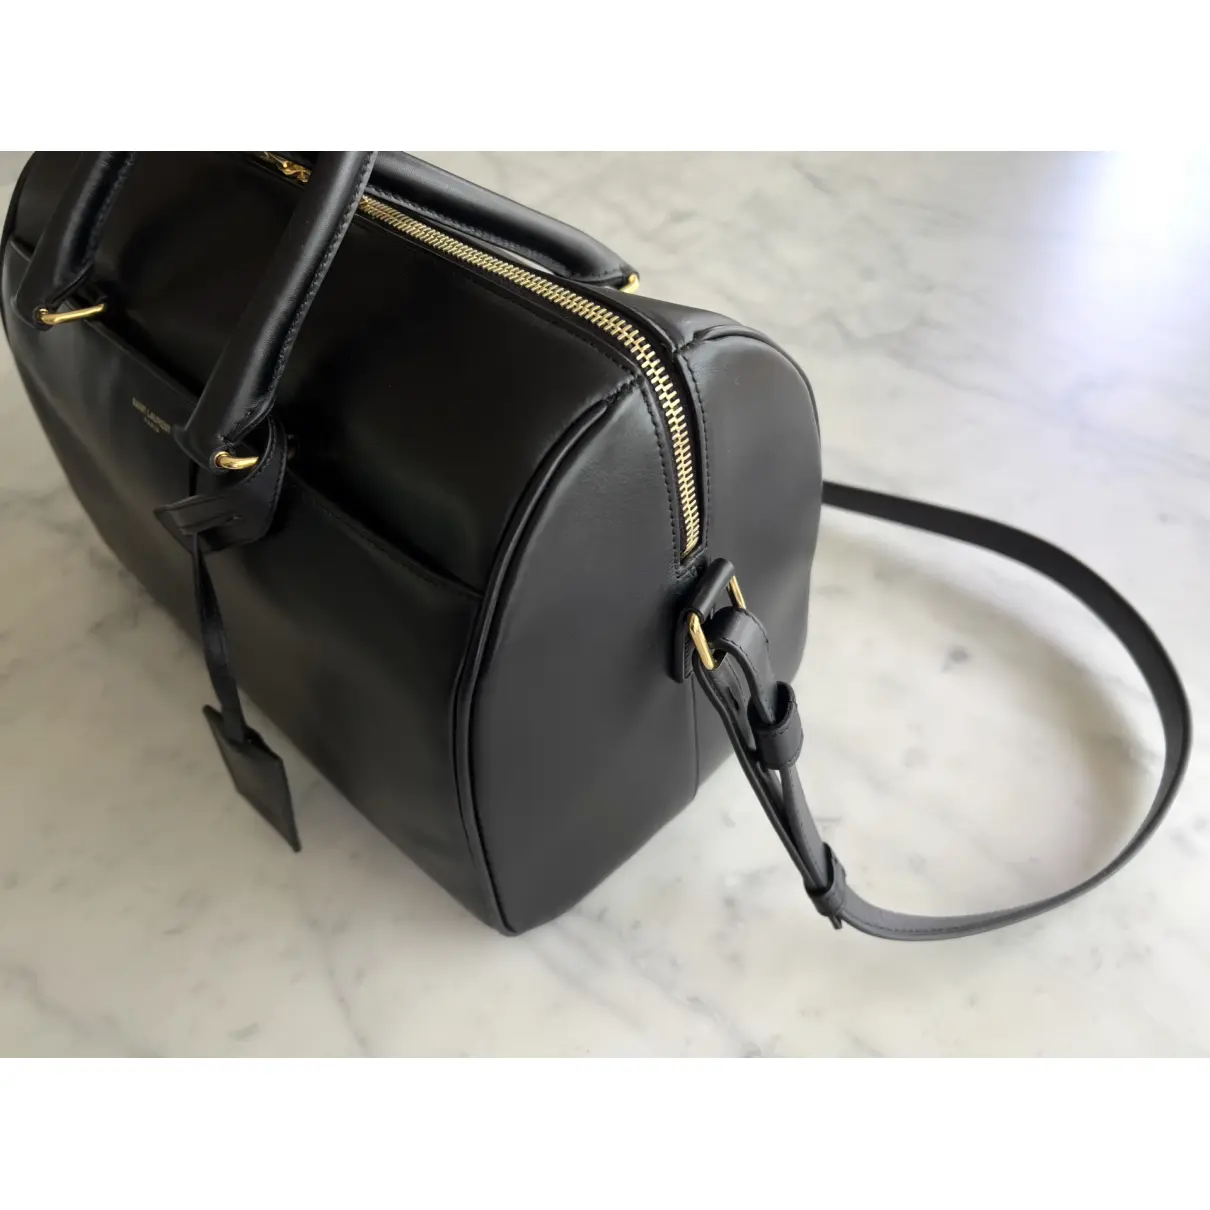 Duffle leather satchel Saint Laurent